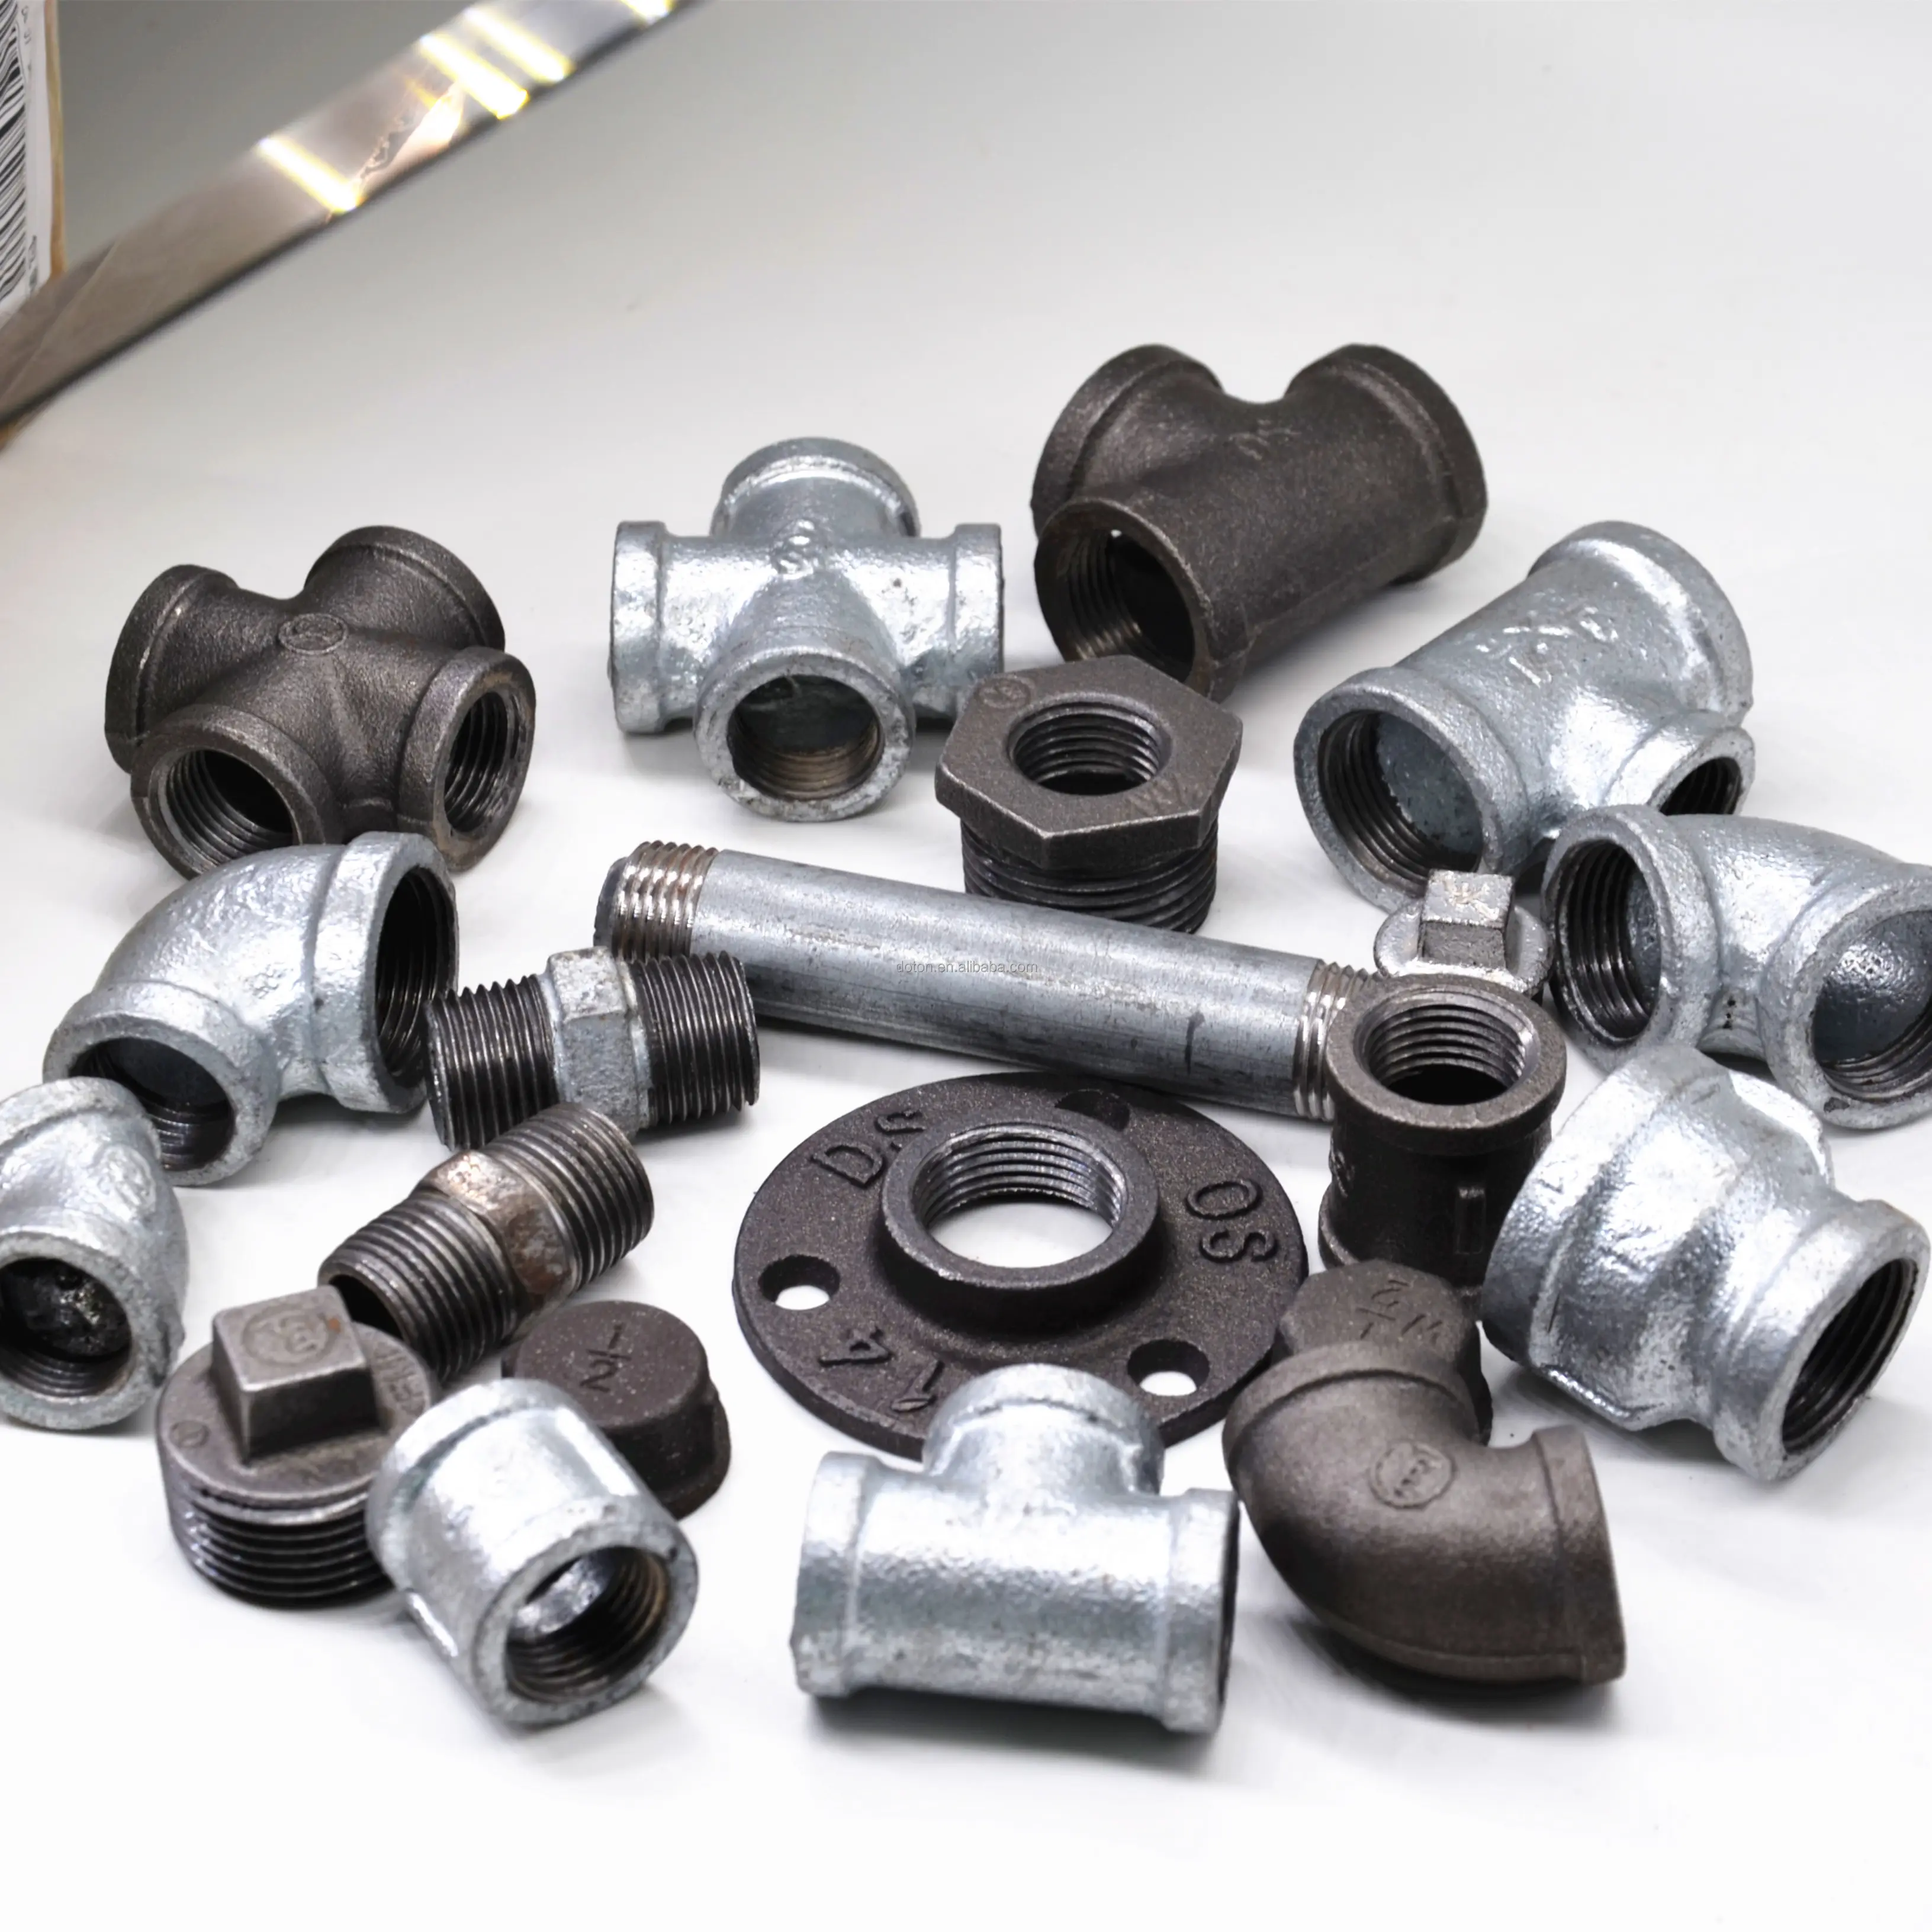 Lack-accesorios de tubería de hierro fundido lbow 90, piezas de tubería estándar para ussia